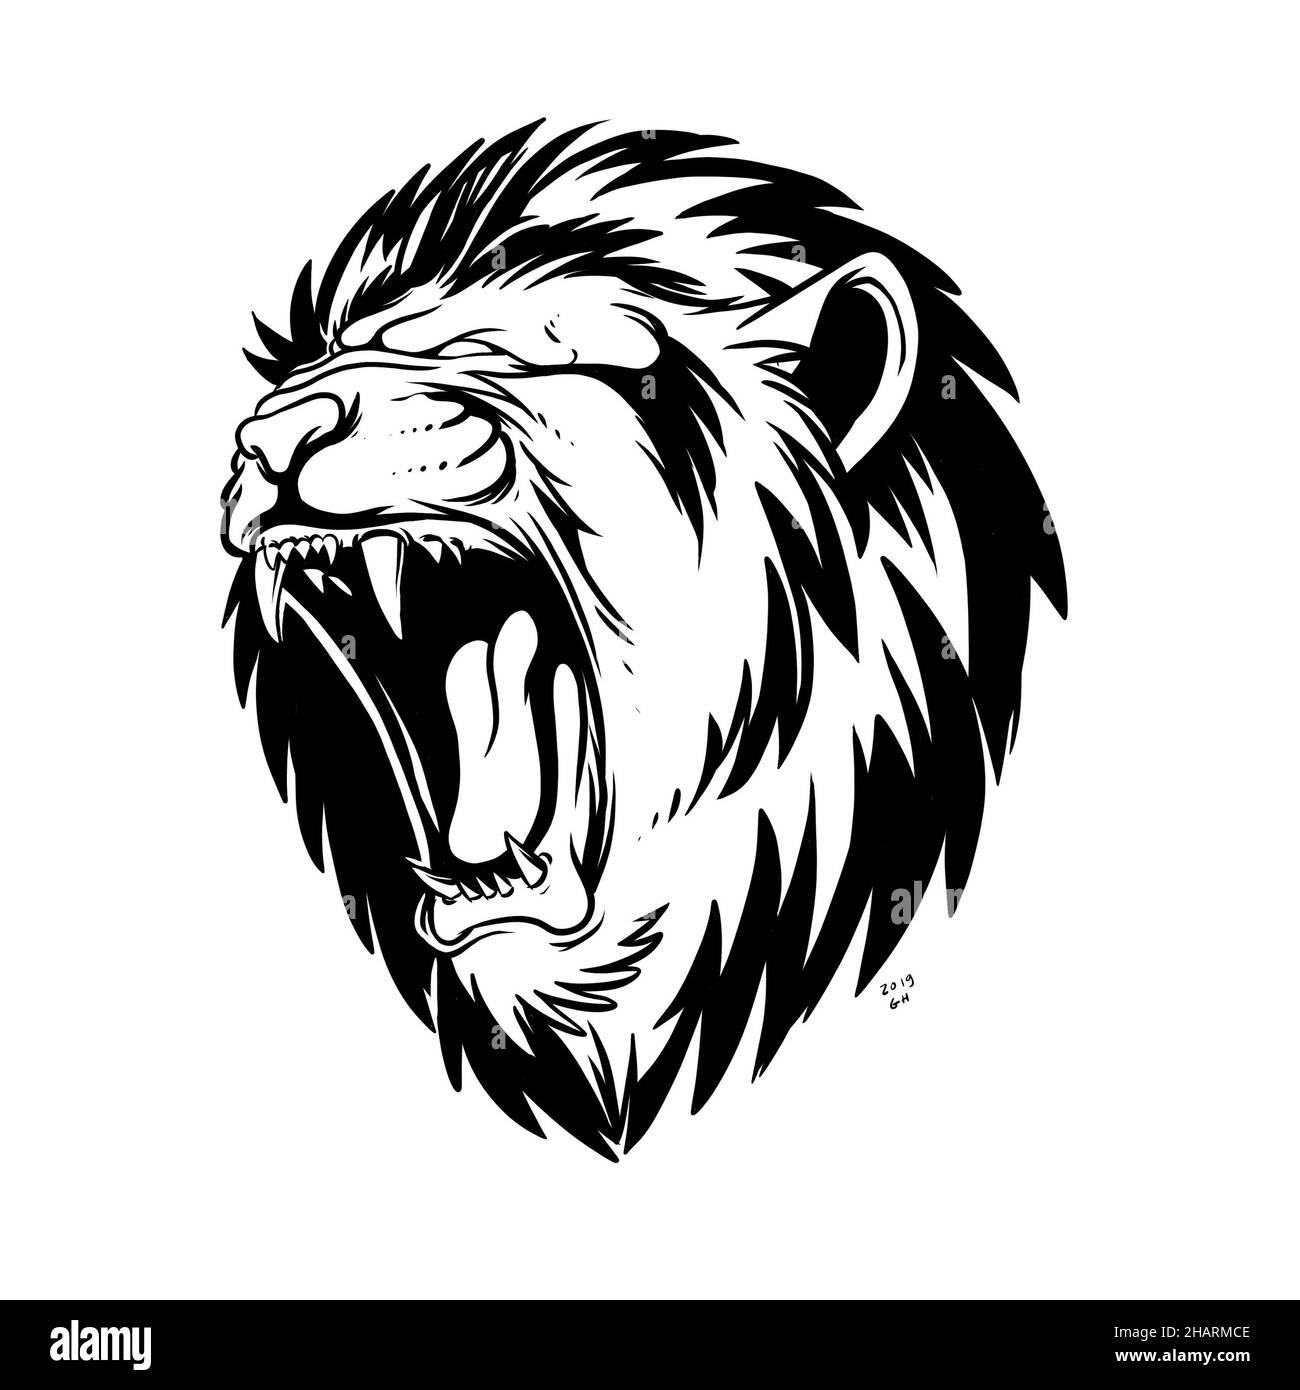 un león rugiente, el rey de la selva. una ilustración dibujada a mano de la cabeza de un animal salvaje. dibujo de la línea del arte para el emblema, el cartel, la pegatina, el tatuaje, etc. Foto de stock